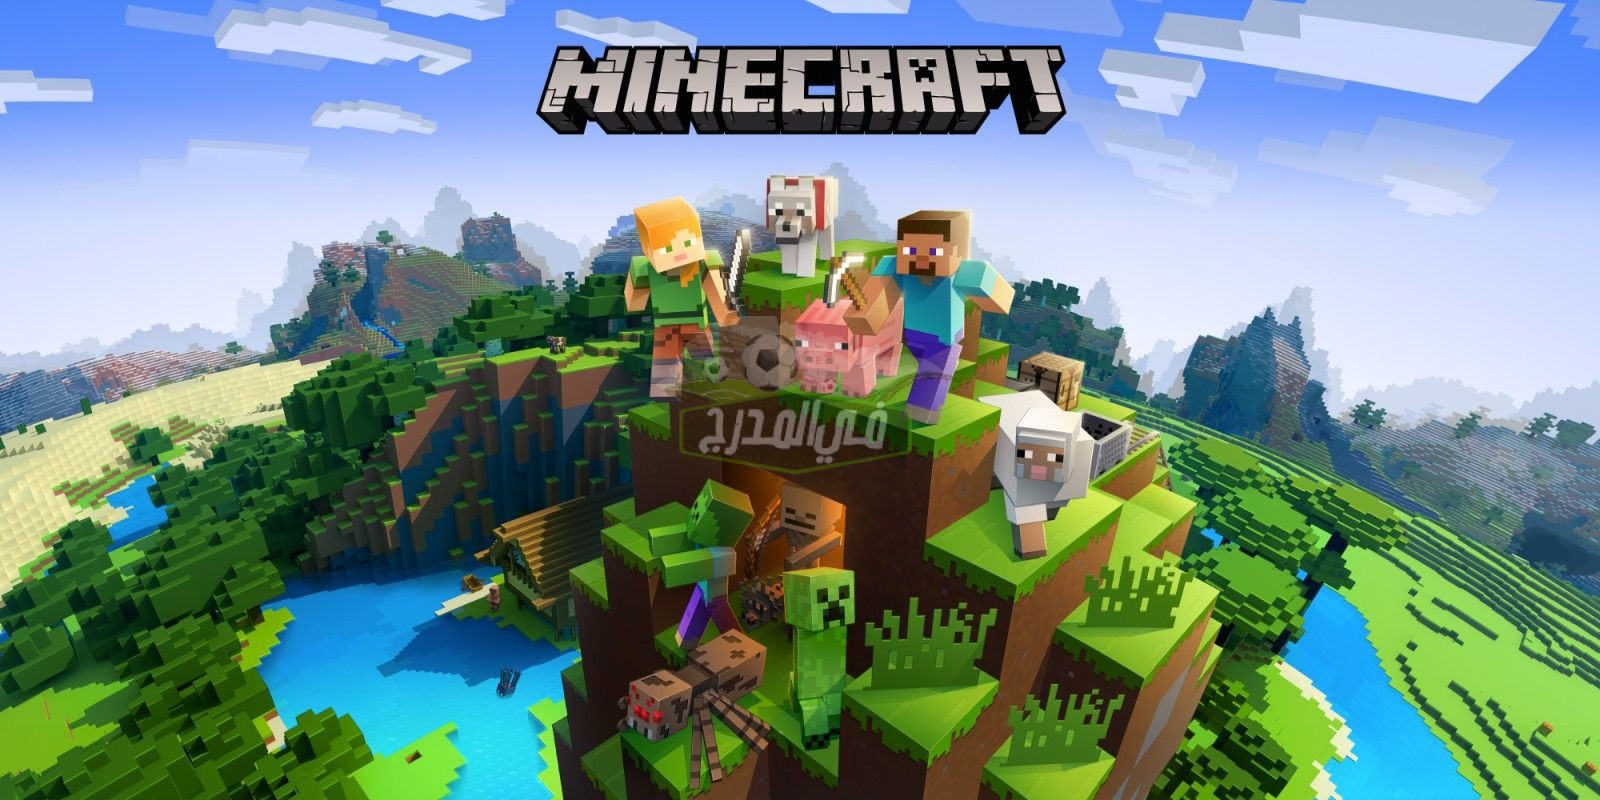 طريقة تحميل لعبة ماين كرافت Minecraft للهواتف المحمولة ومتطلبات تشغيل اللعبة